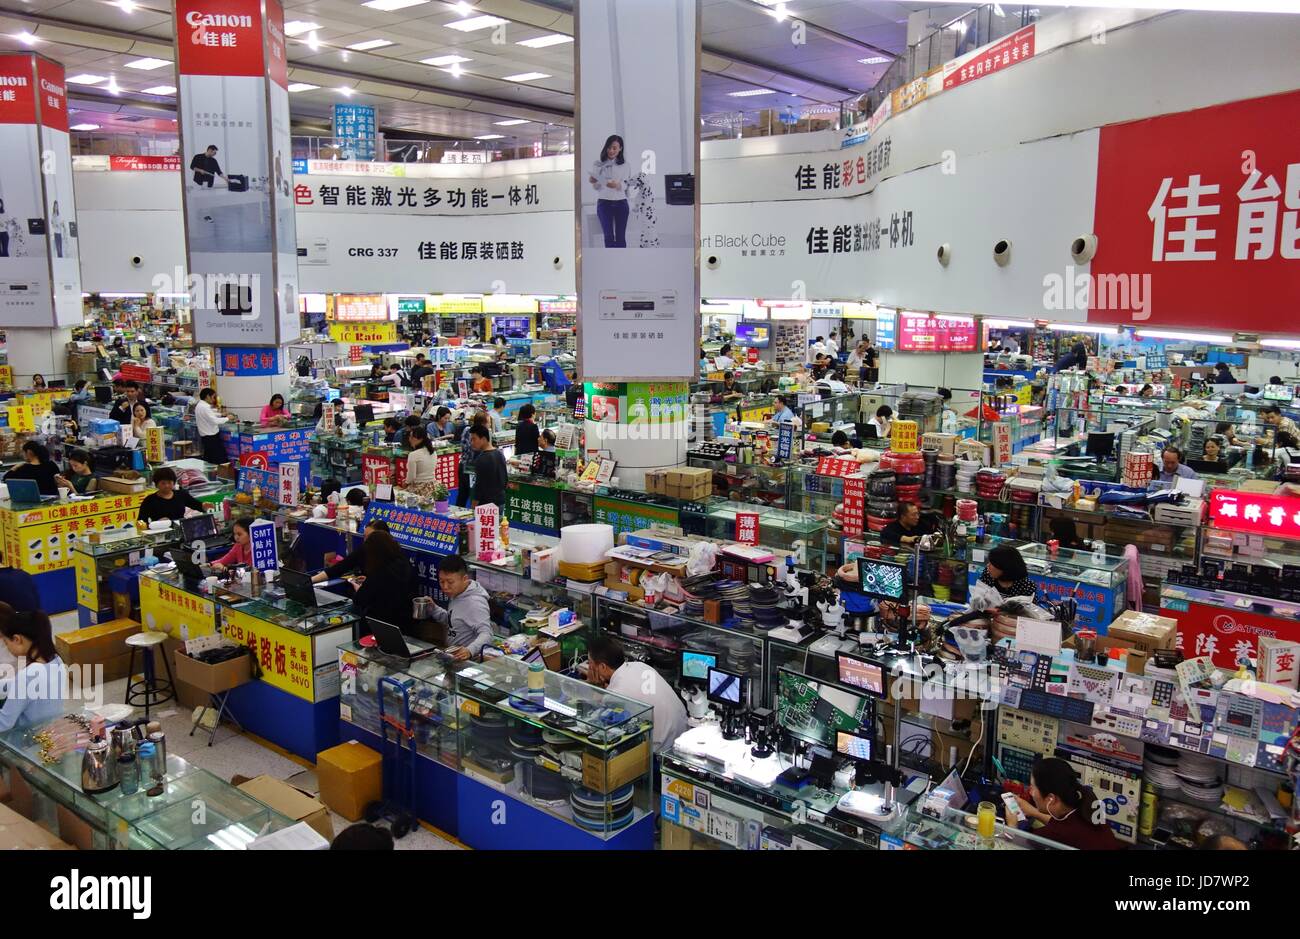 Vista de Huaqiangbei, el mercado de la electrónica más grande del mundo, ubicado en Shenzhen, República Popular de China Foto de stock